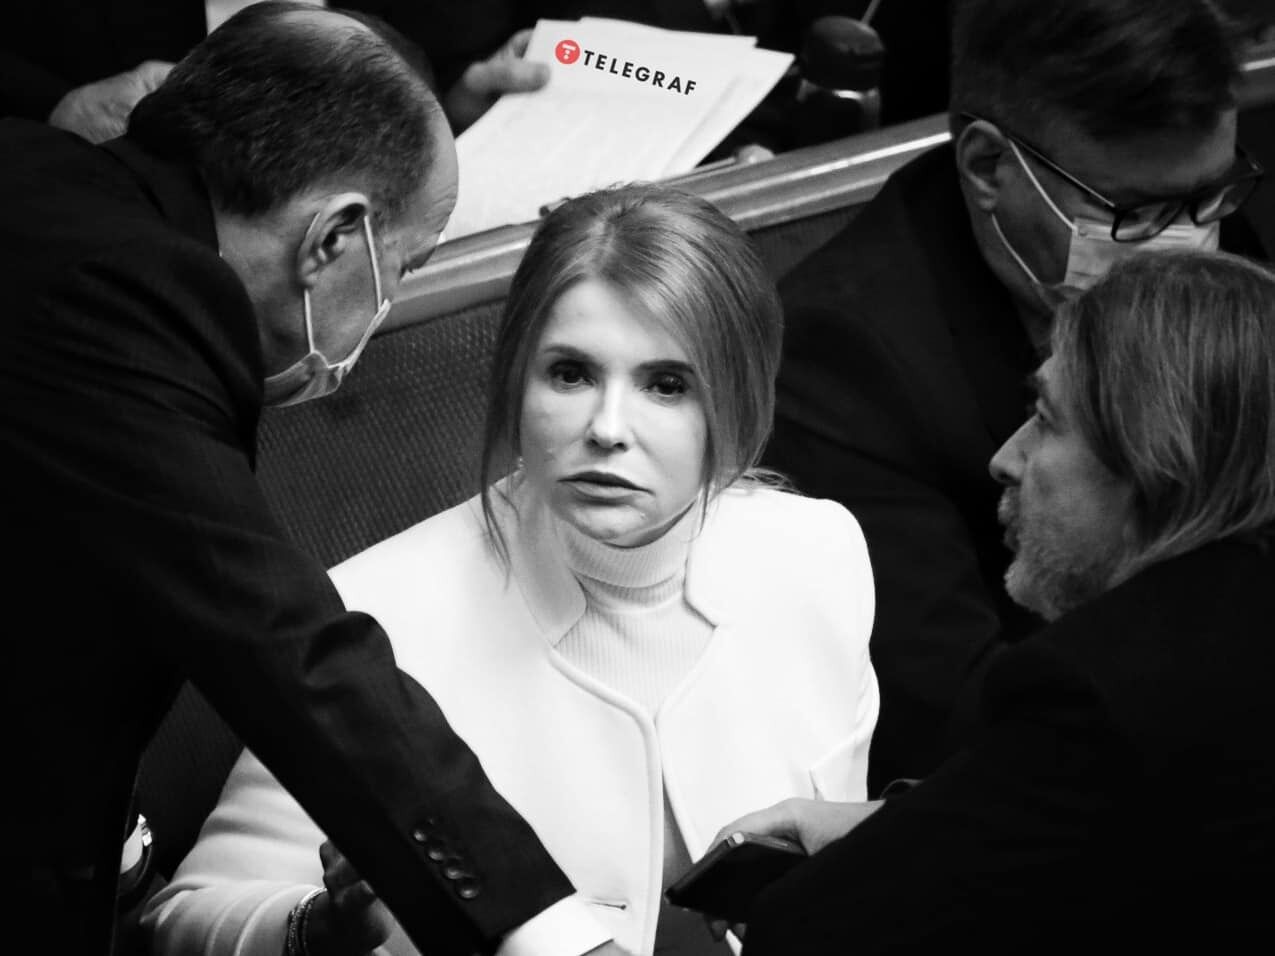 Тимошенко помітила фотографа